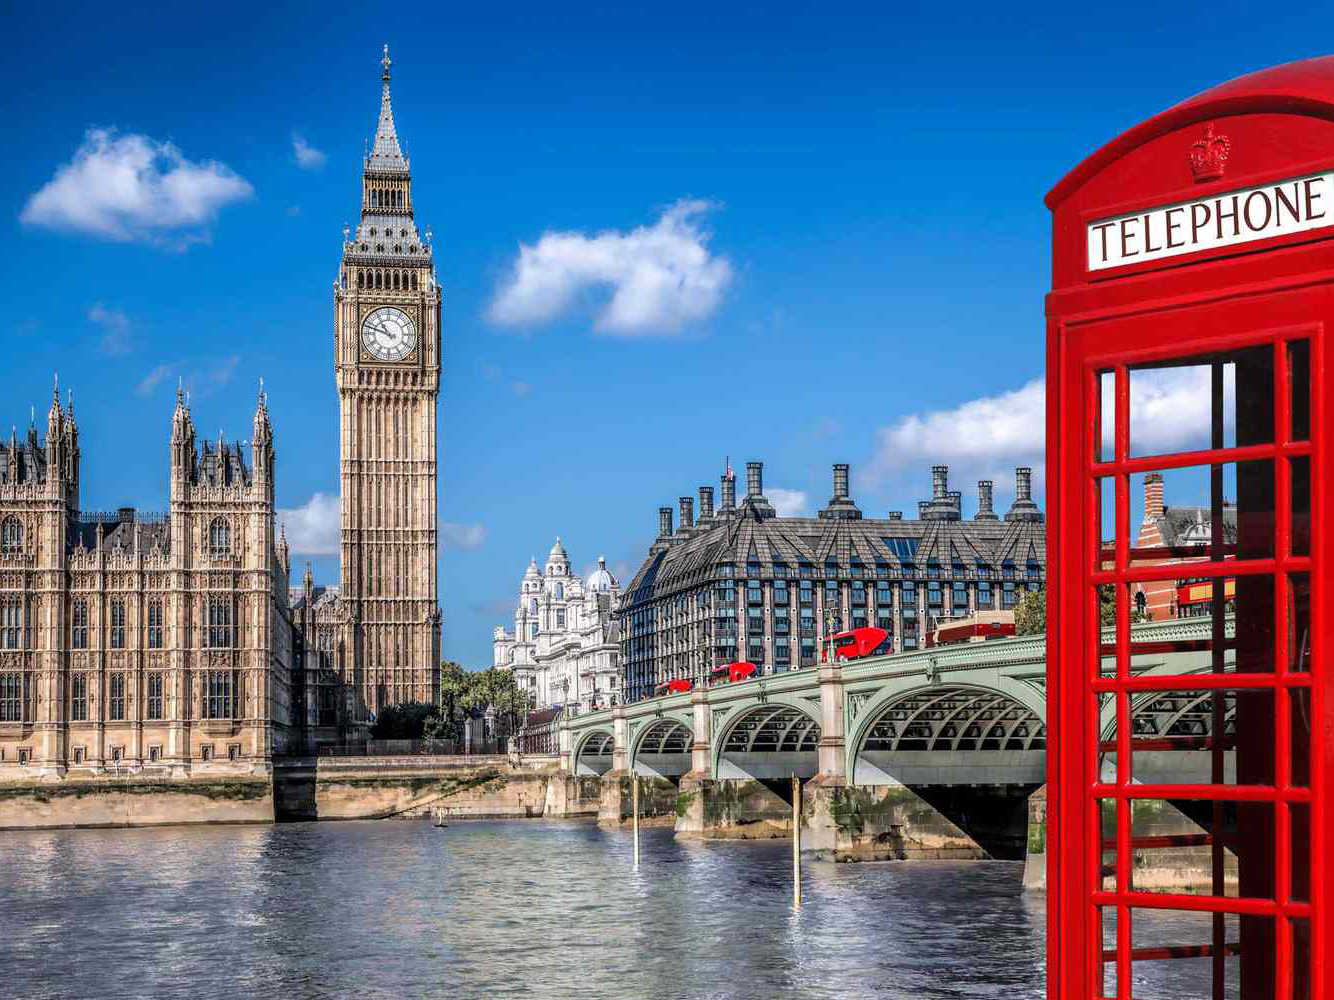 أفضل وجهة لزيارتك الأولى إلى أوروبا من الإمارات العربية المتحدة - لندن، بريطانيا